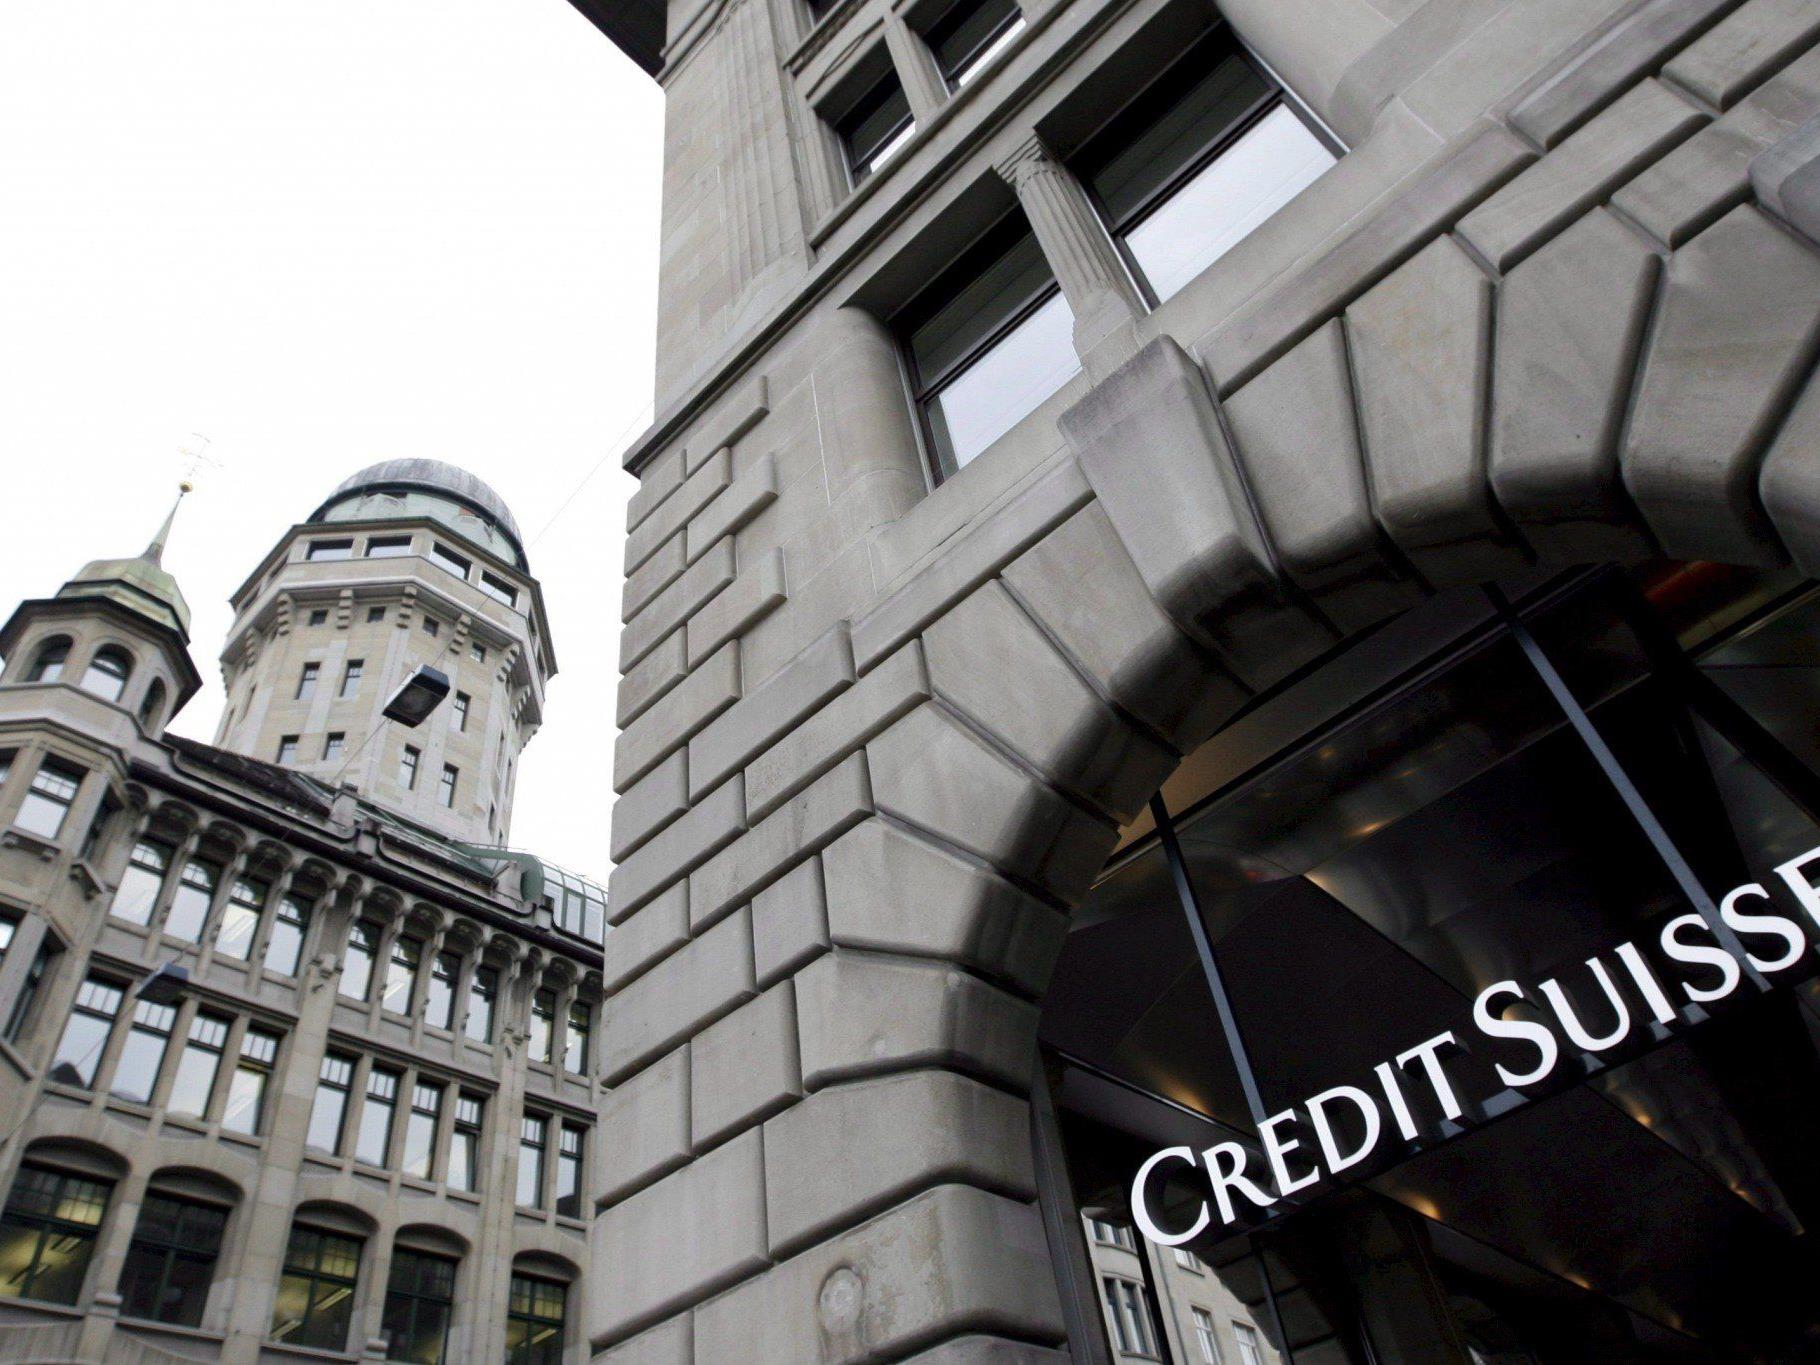 Mögliche Steuersünder bei Credit Suisse und Julius Bär sollen Belege vorweisen